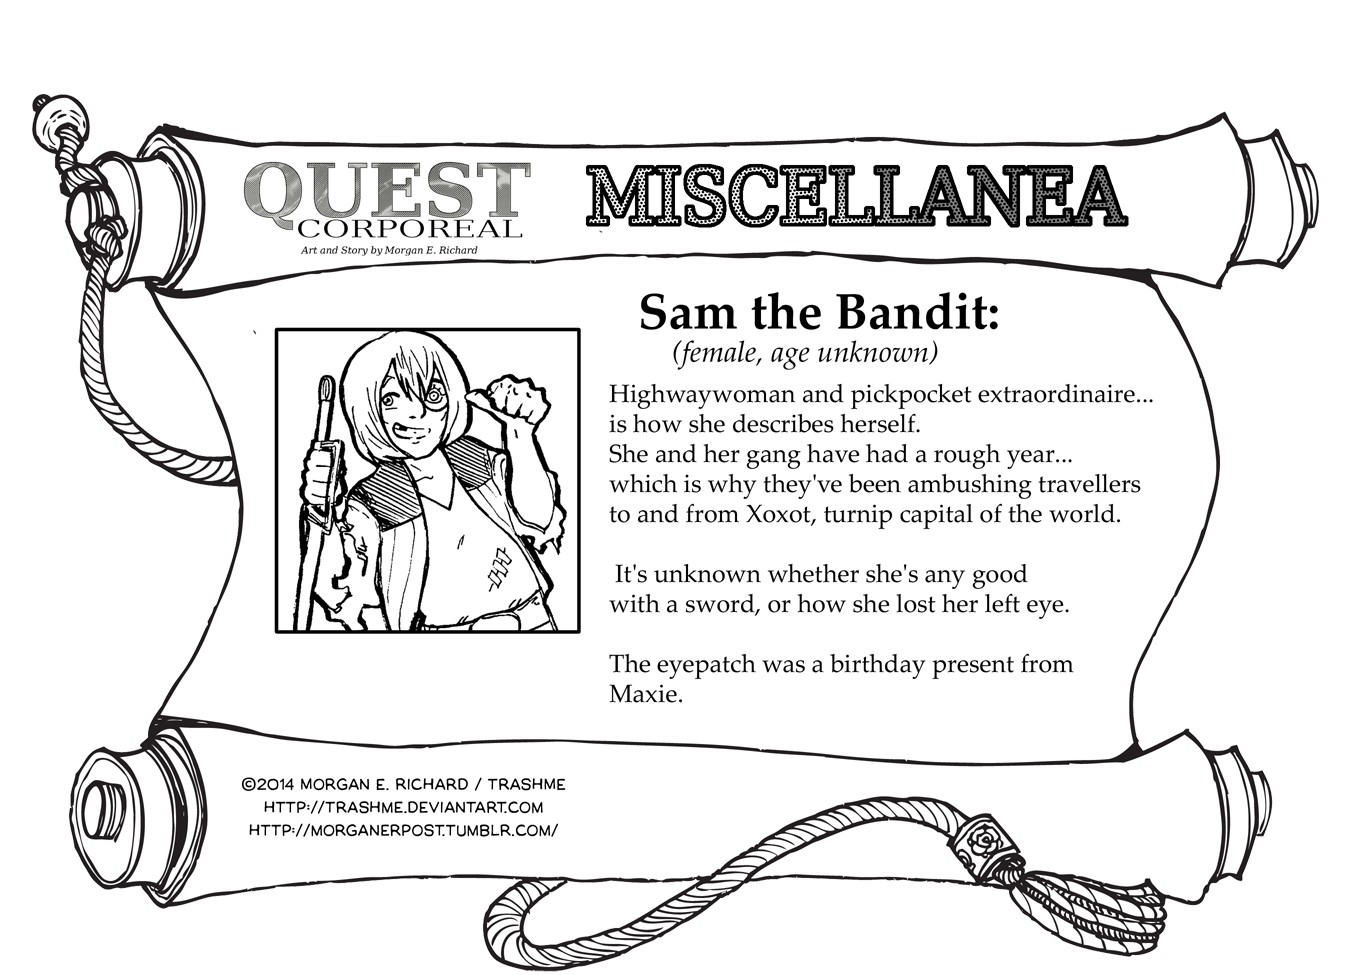 Miscellanea Corporeal: Sam the Bandit